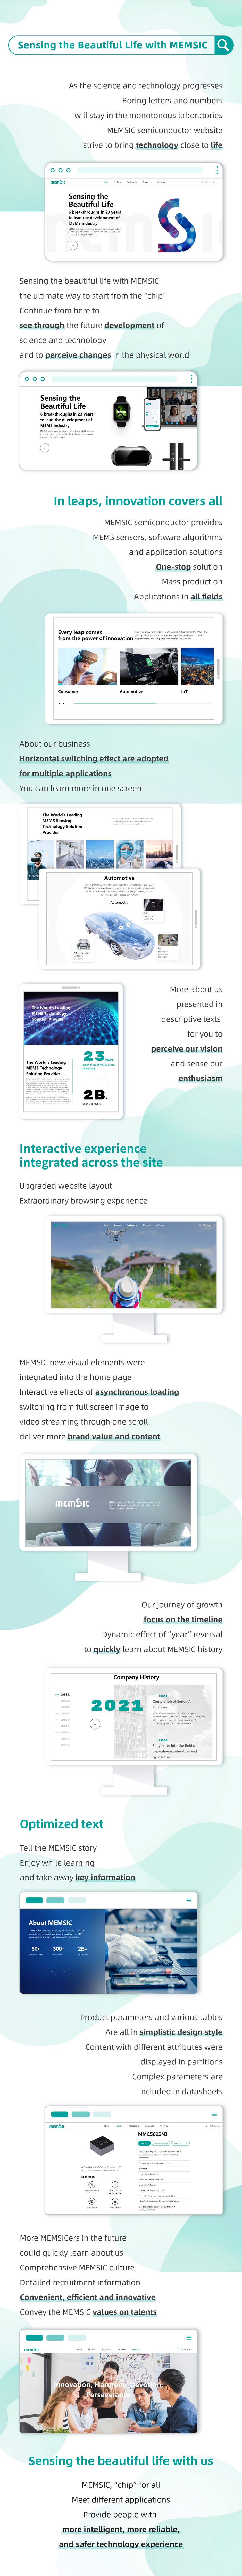 MEMSIC New Website.jpg